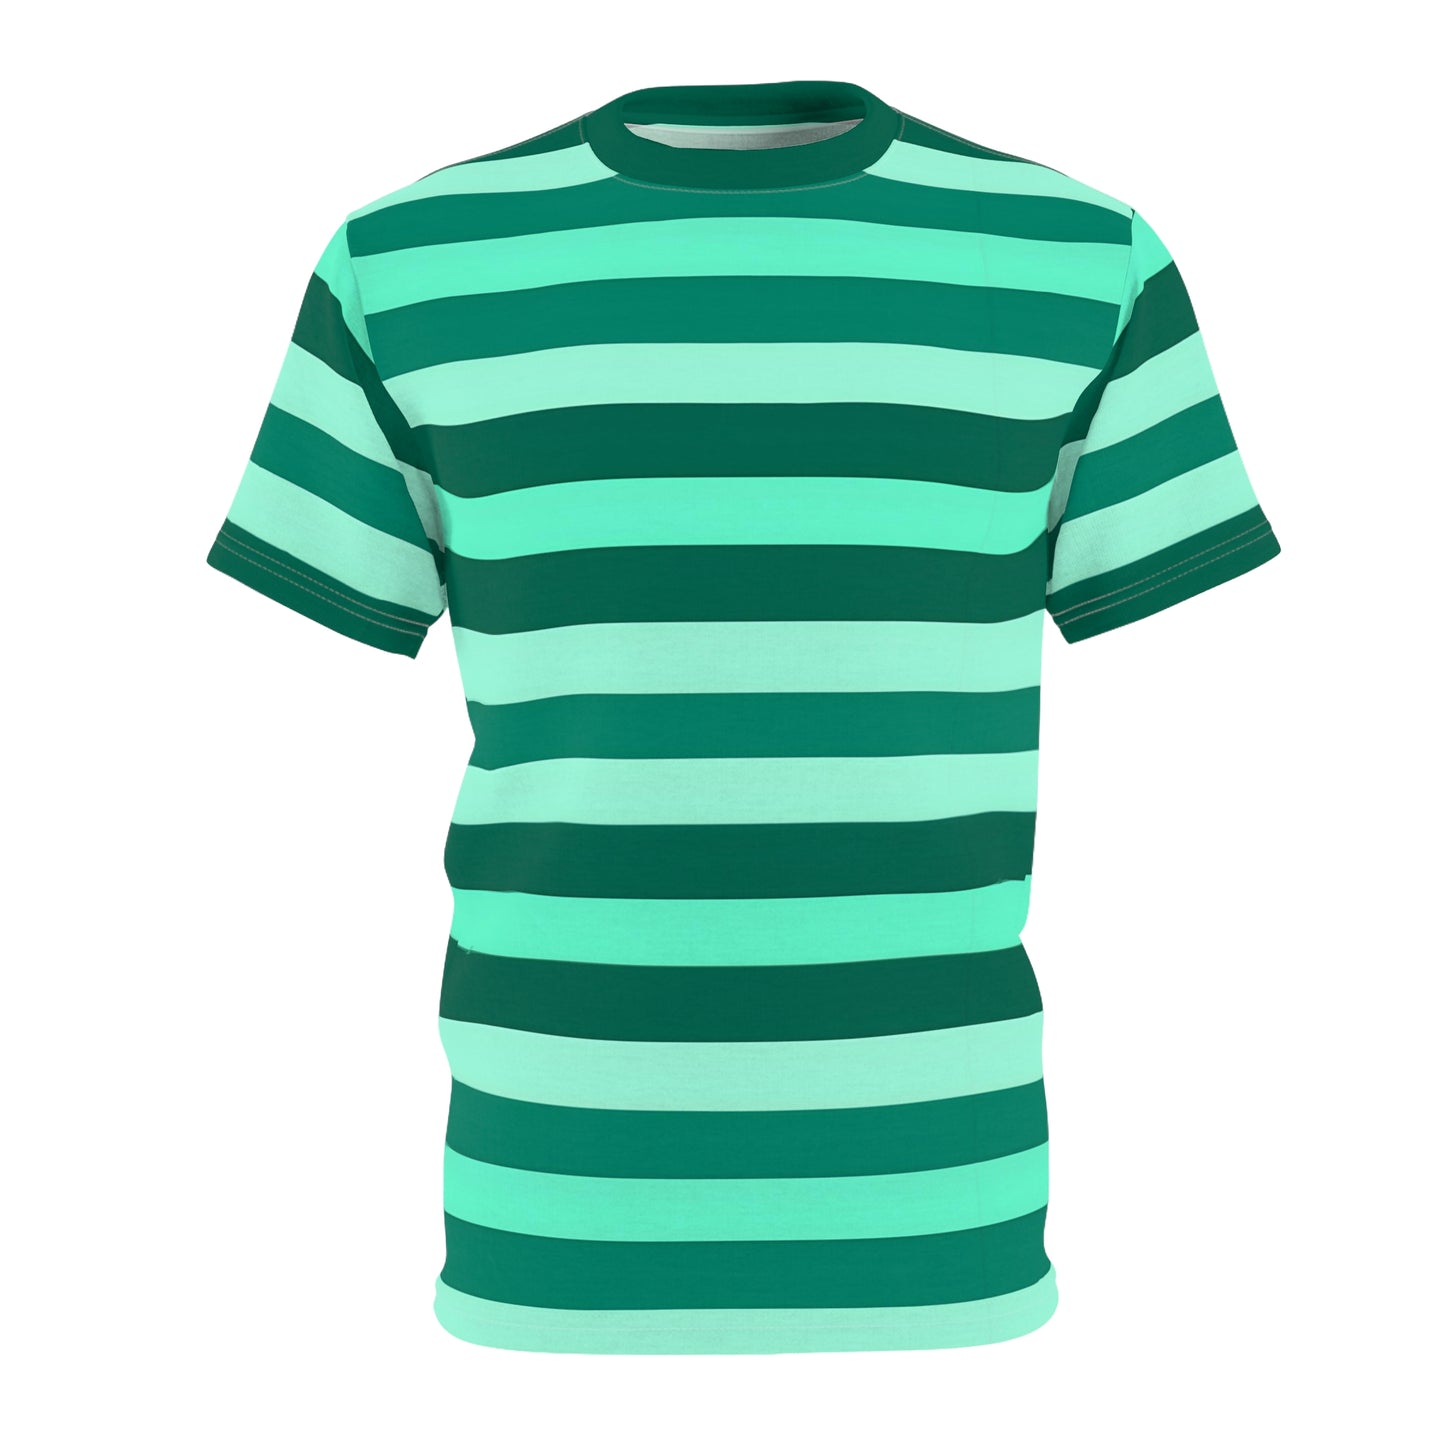 Green on Green Striped Men T Shirt, Bold Horizontal Stripes Designer Lightweight Heavyweight Crewneck Men Women Tee Short Sleeve Shirt